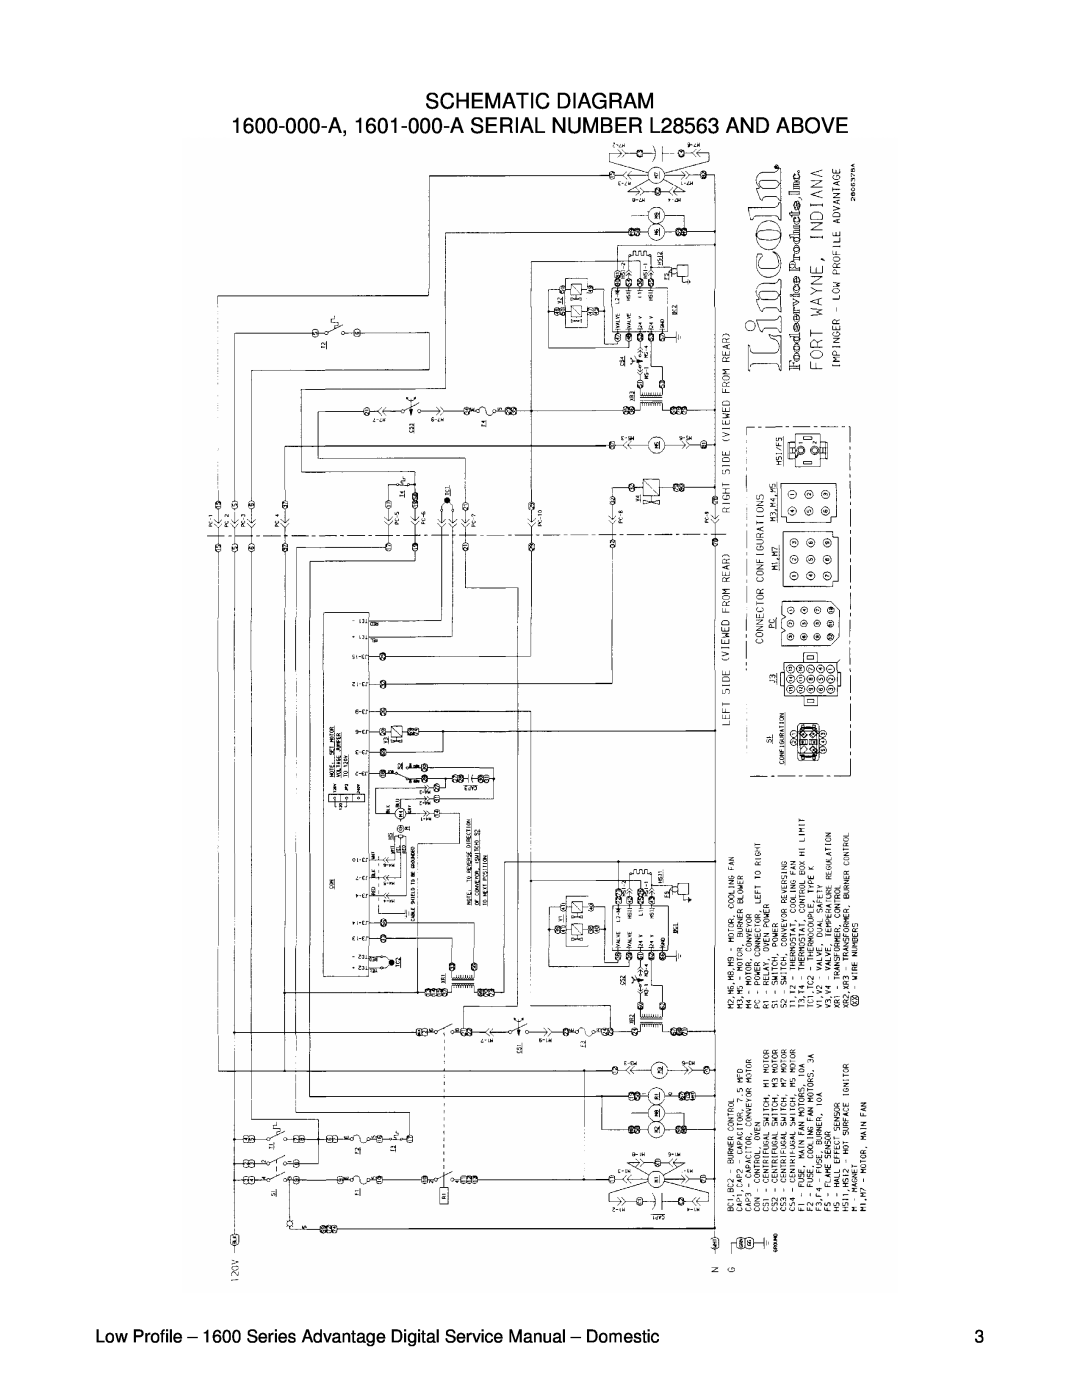 Lincoln 1601-000-A, 1600-000-A service manual Schematic Diagram 